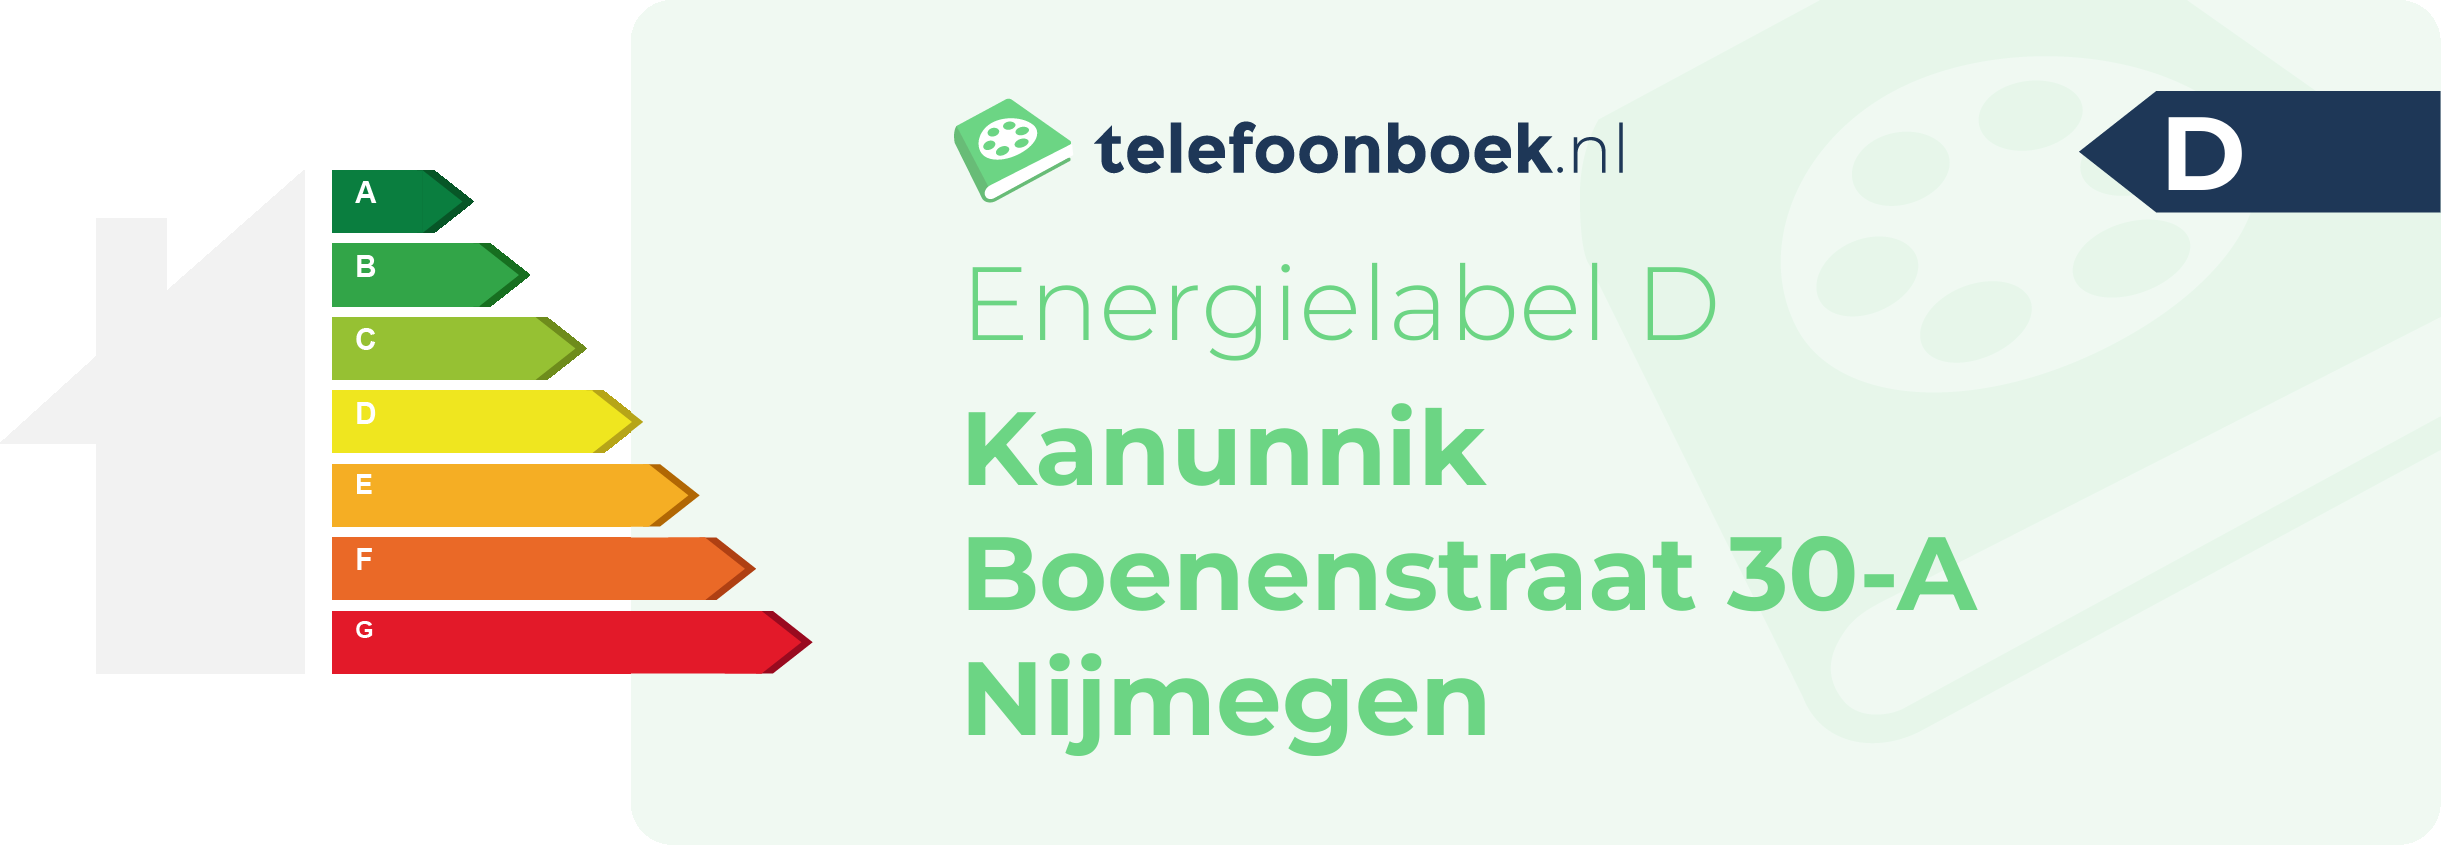 Energielabel Kanunnik Boenenstraat 30-A Nijmegen